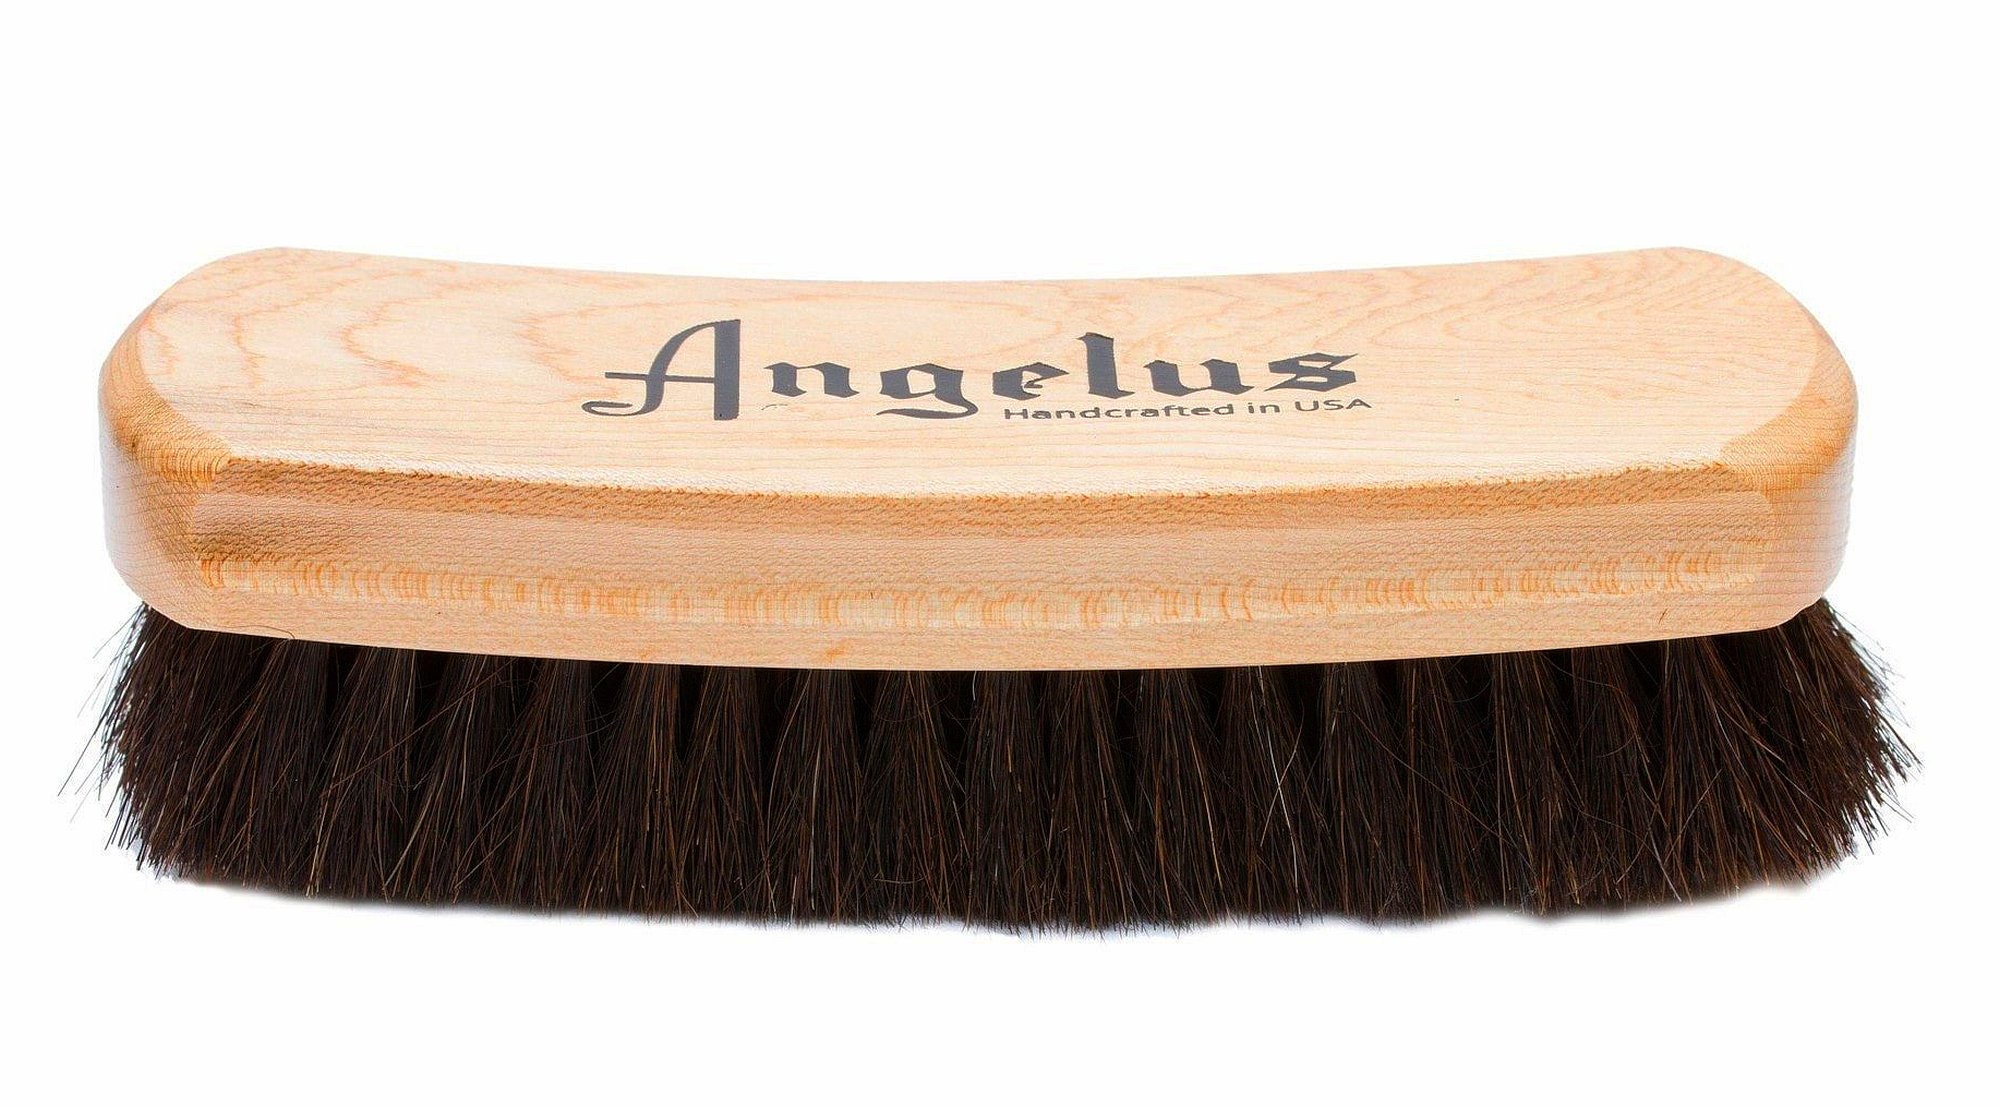 Angelus Premium Shoe Cleaning Brush